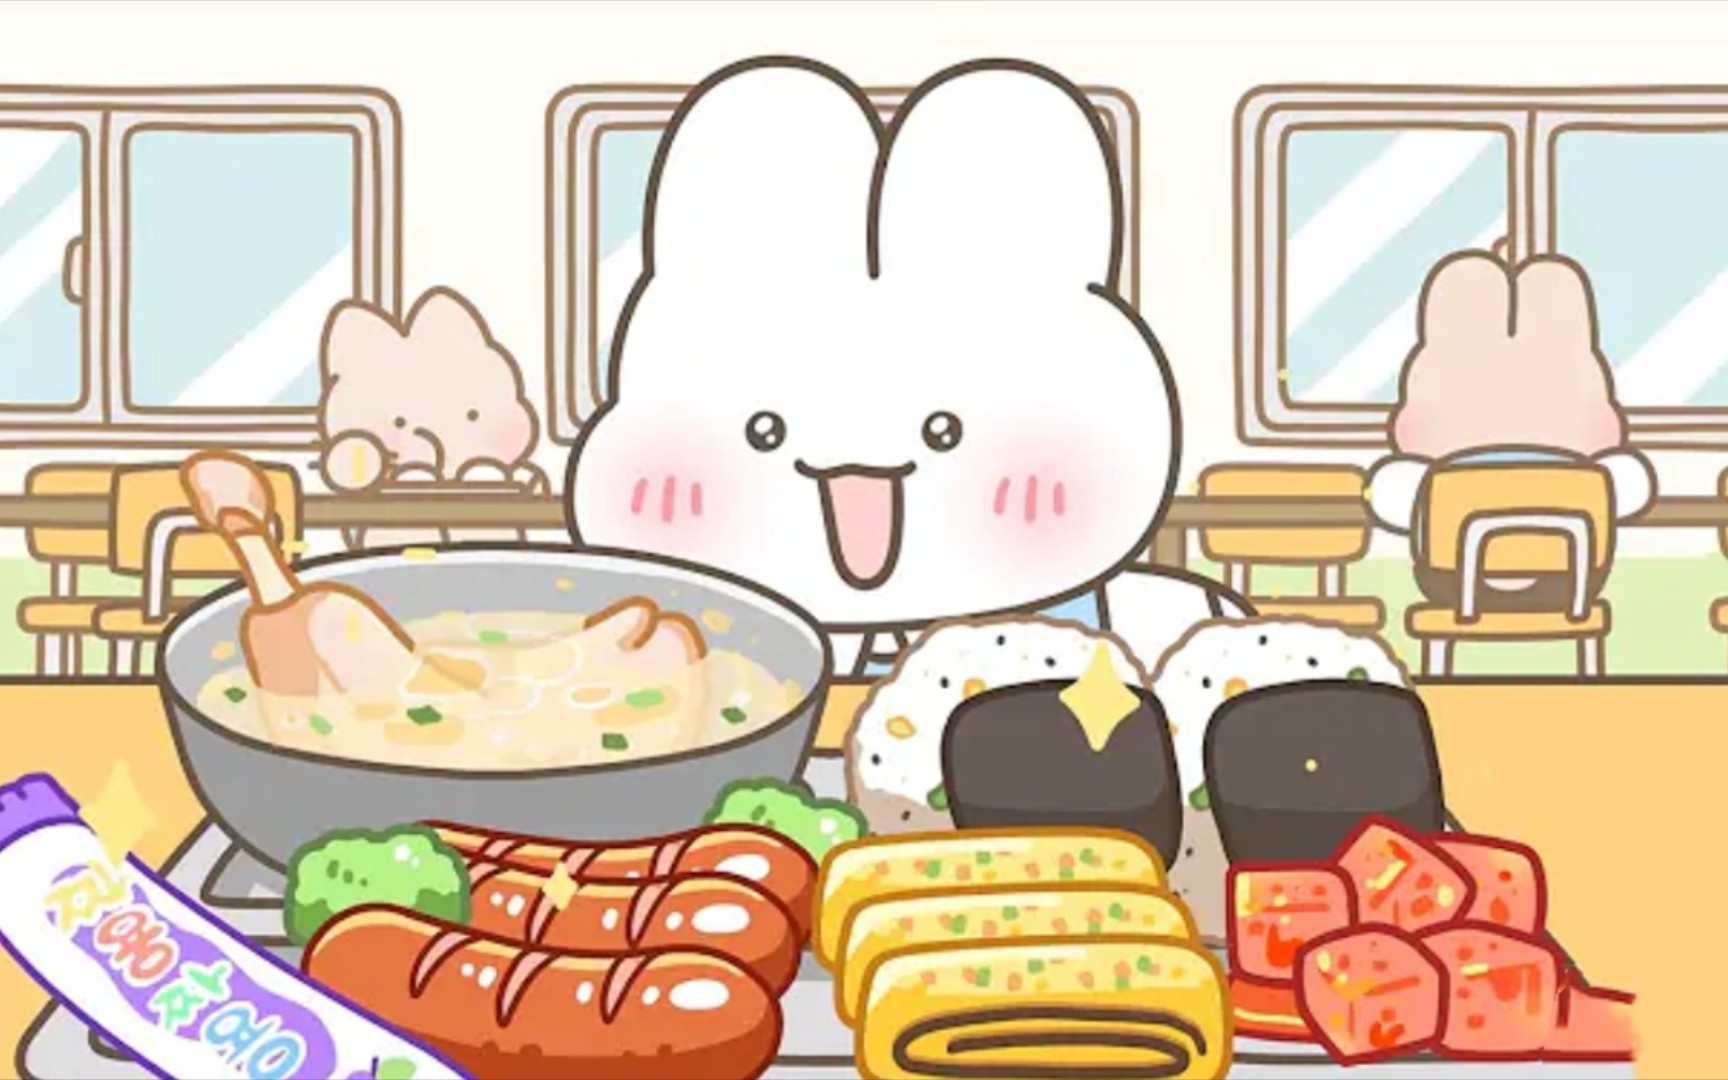 食堂美食动画吃播来啦！今日份主食参鸡汤、烤肠、饭团、泡菜!